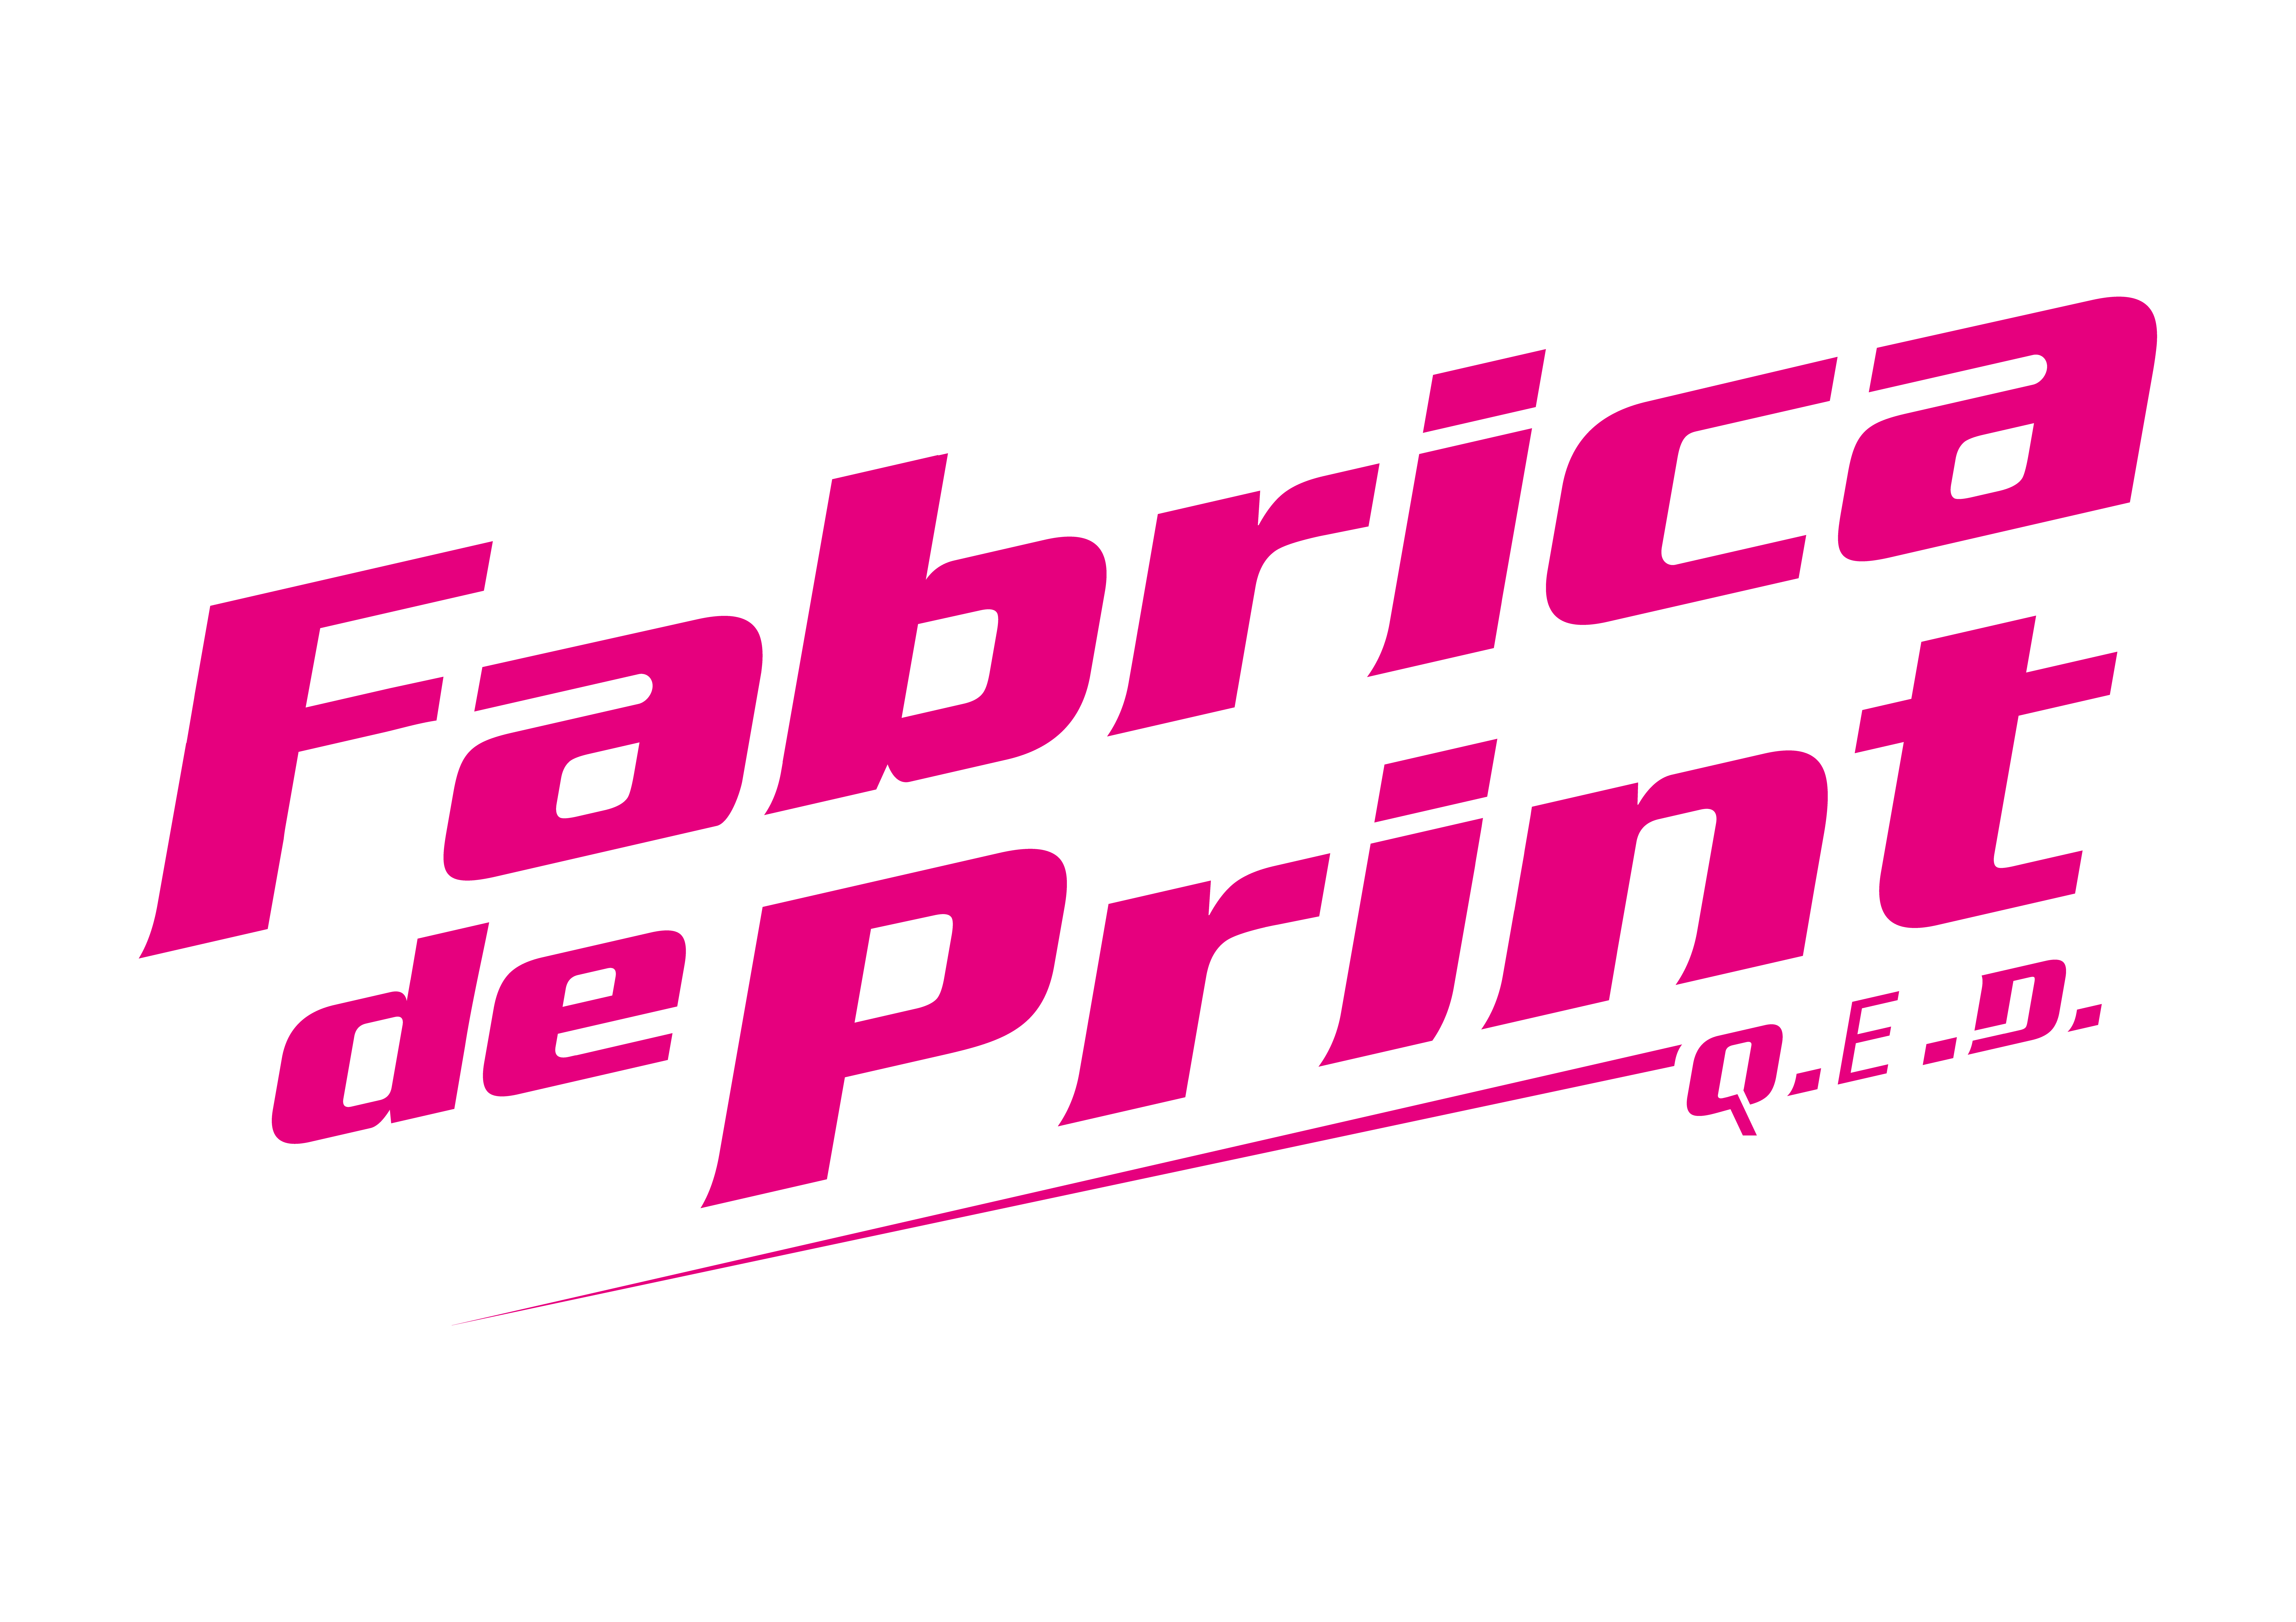 Fabrica de print